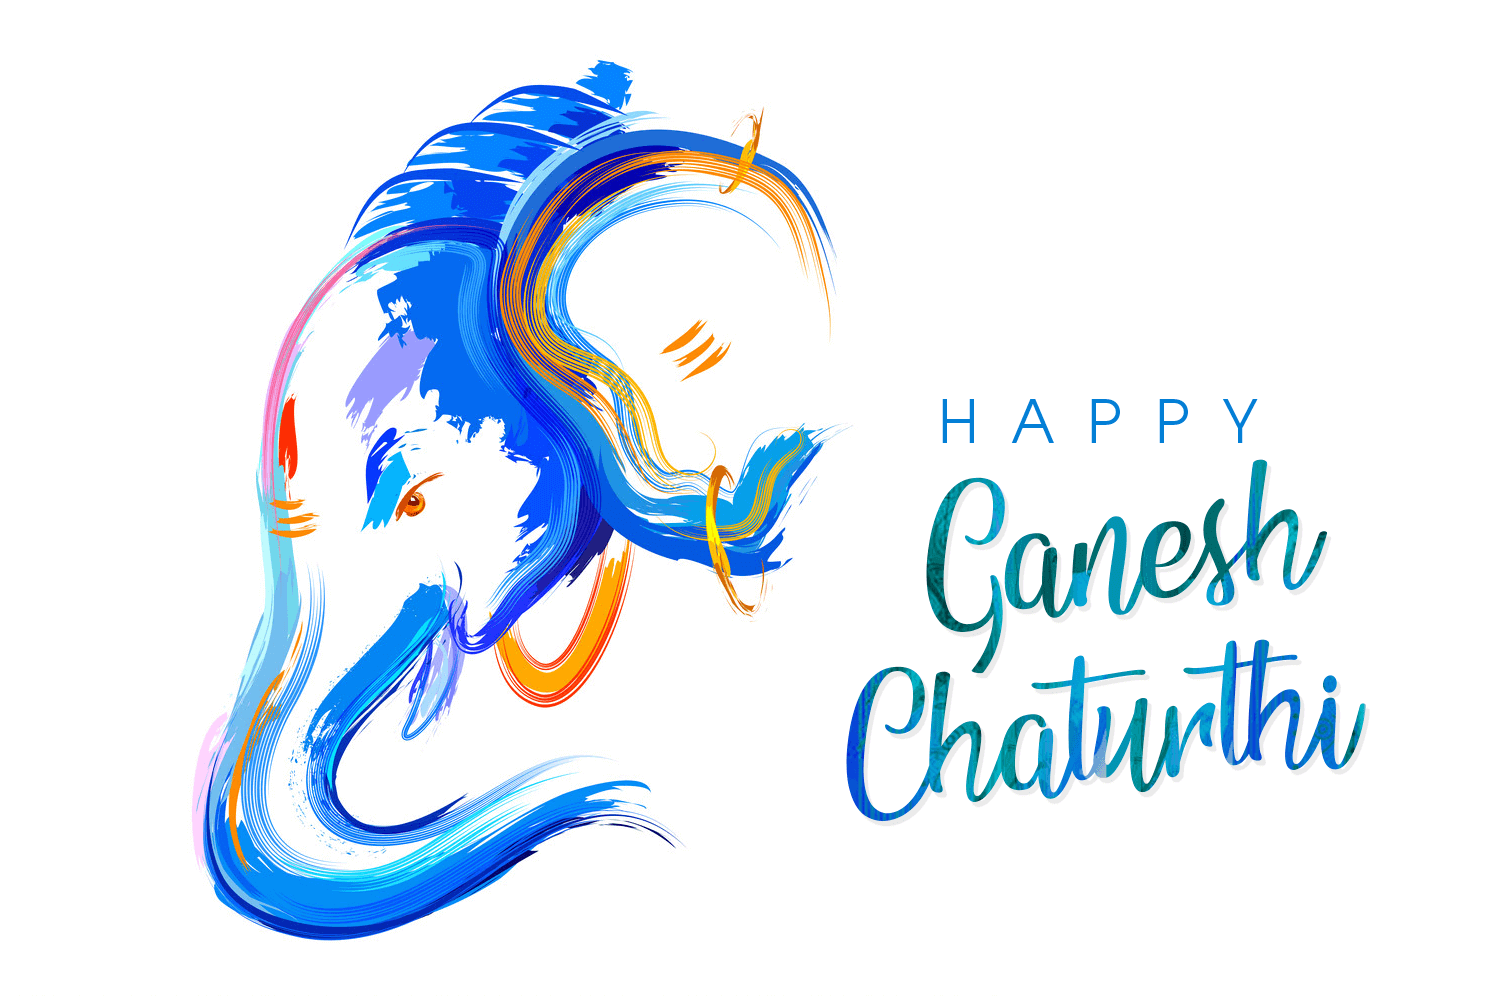 Wishing Everyone Happy Ganesh Chaturthi